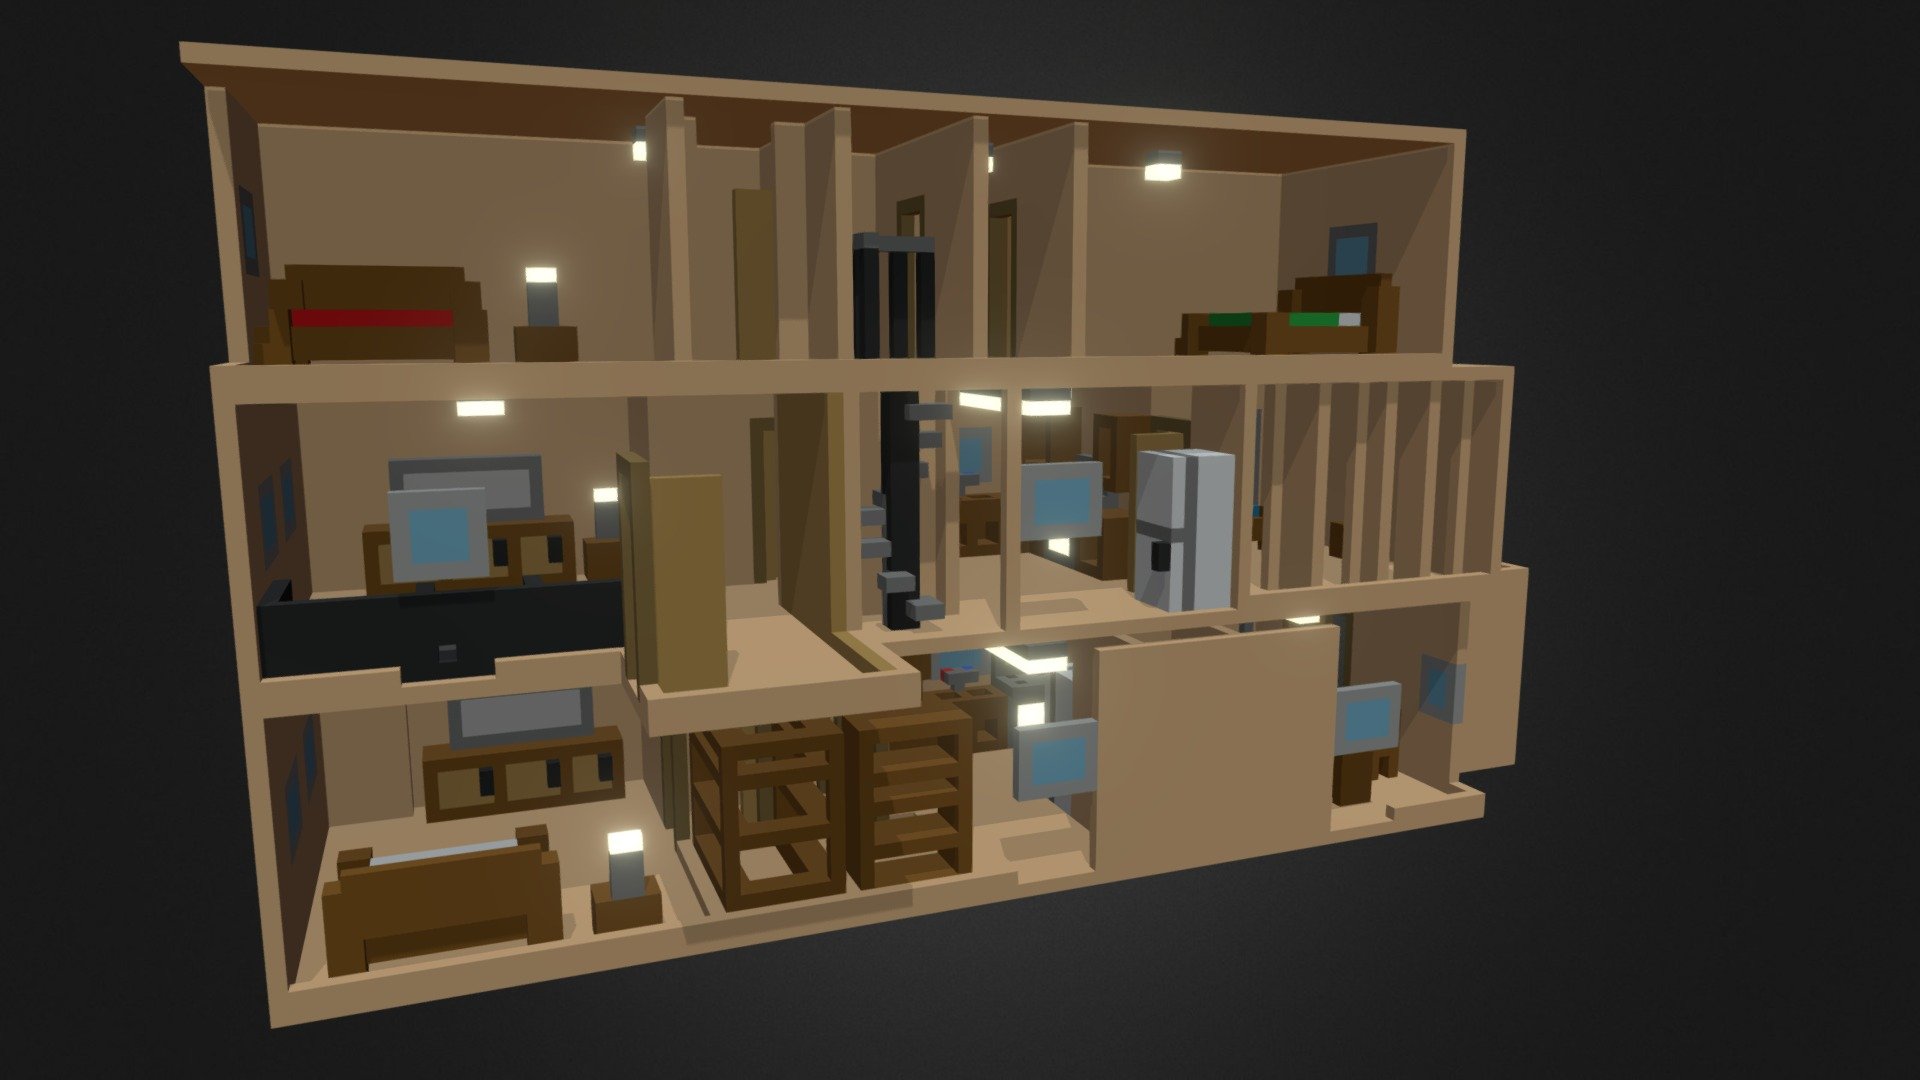 House Floor Plan V2 - Download Free 3D model by carlosmodelingcorner